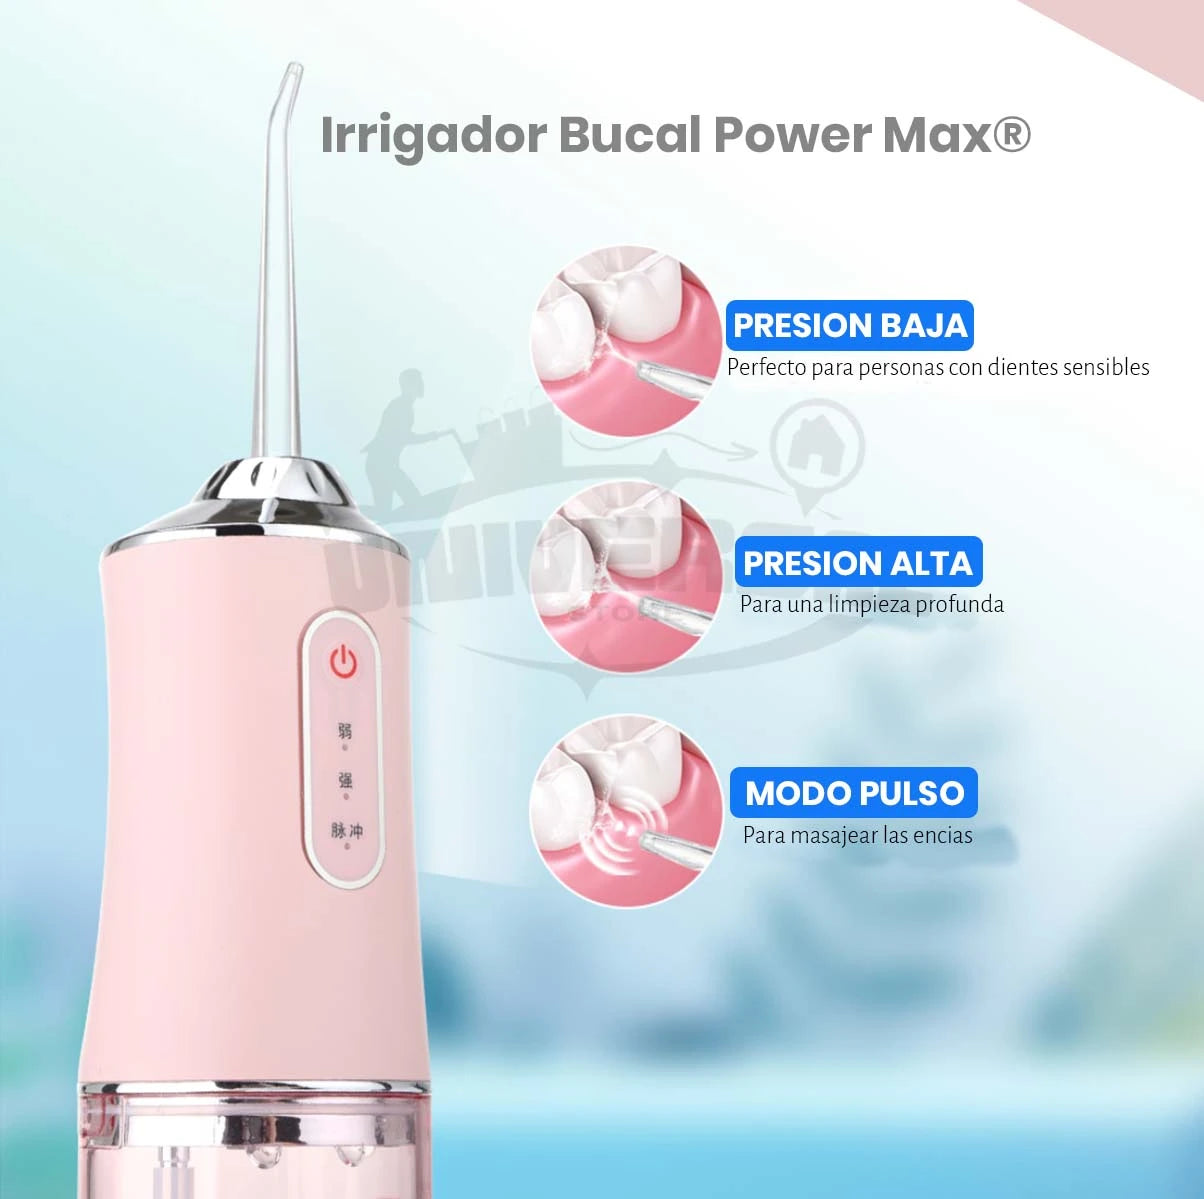 Irrigador Bucal Power Max®